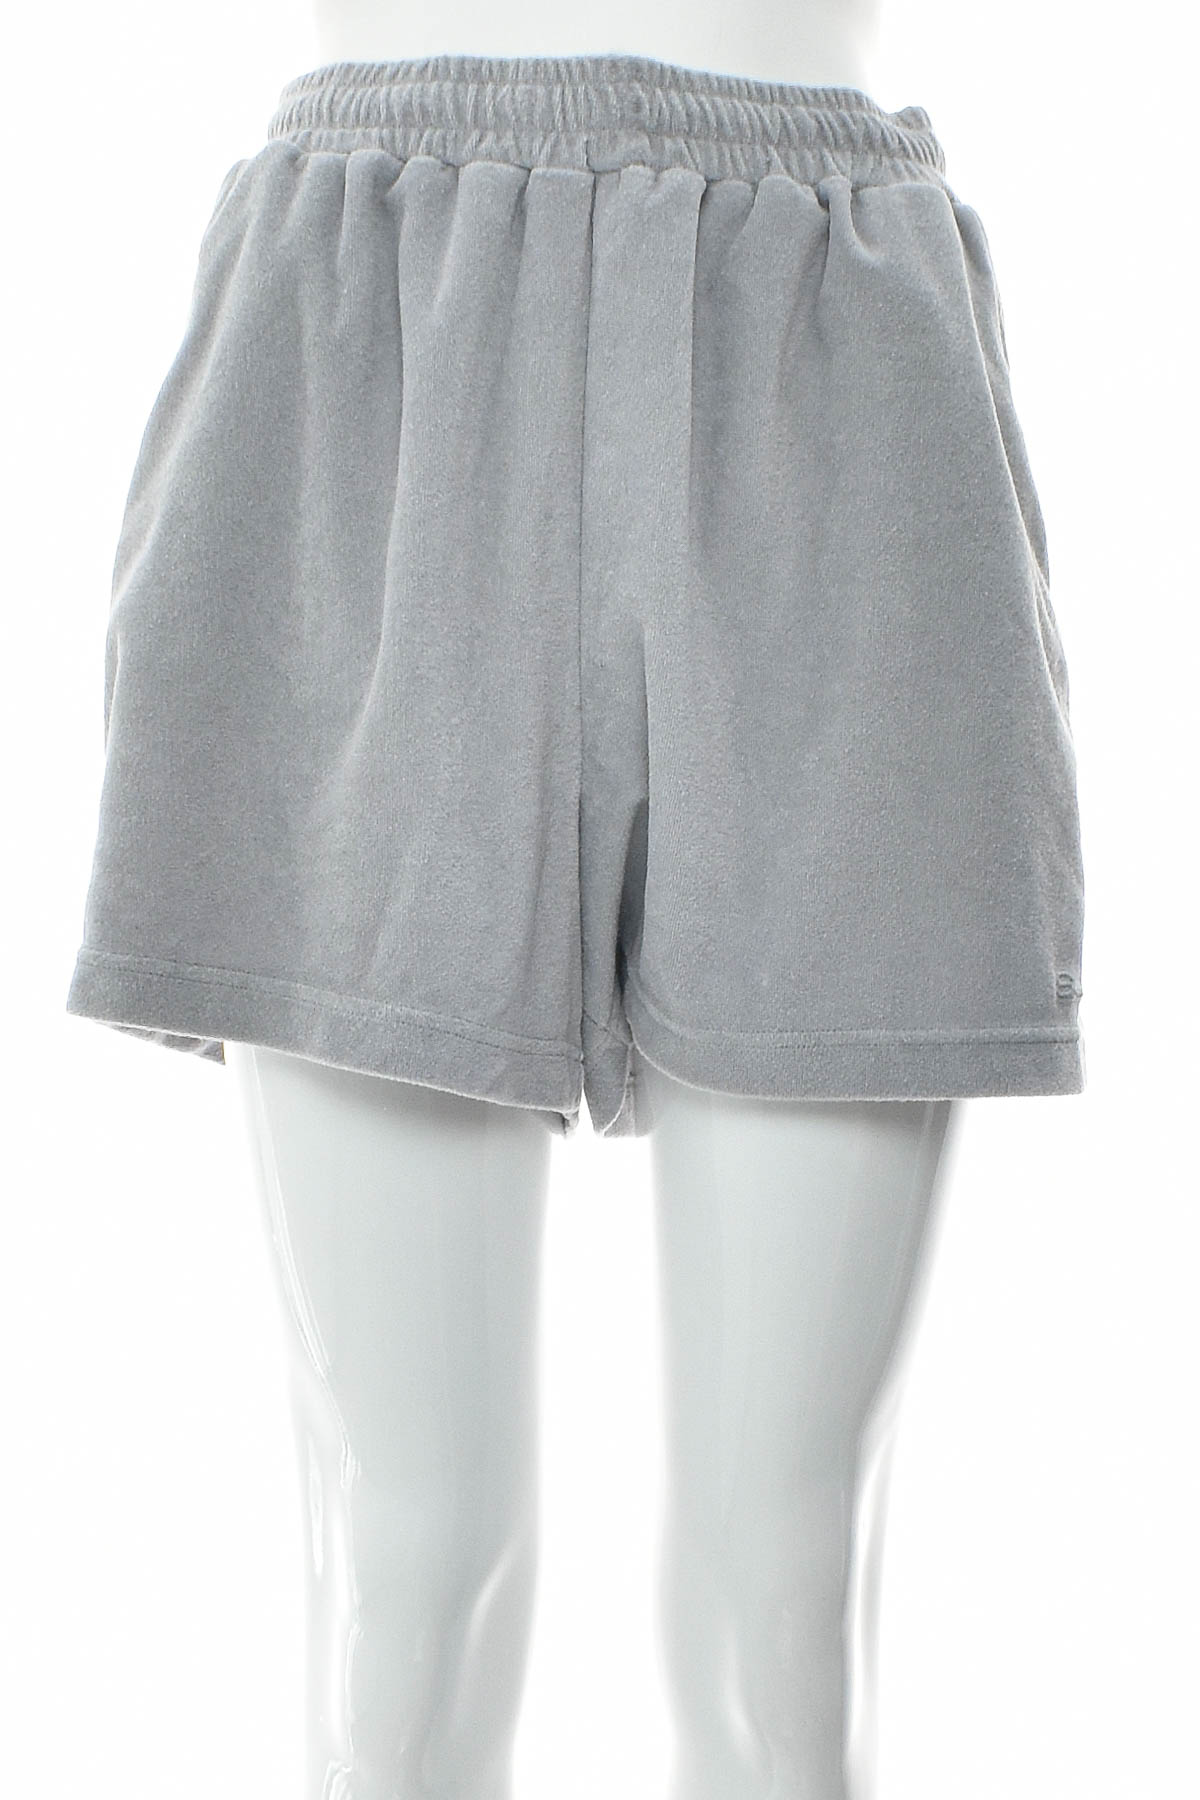 Female shorts - STYLERUNNER - 0